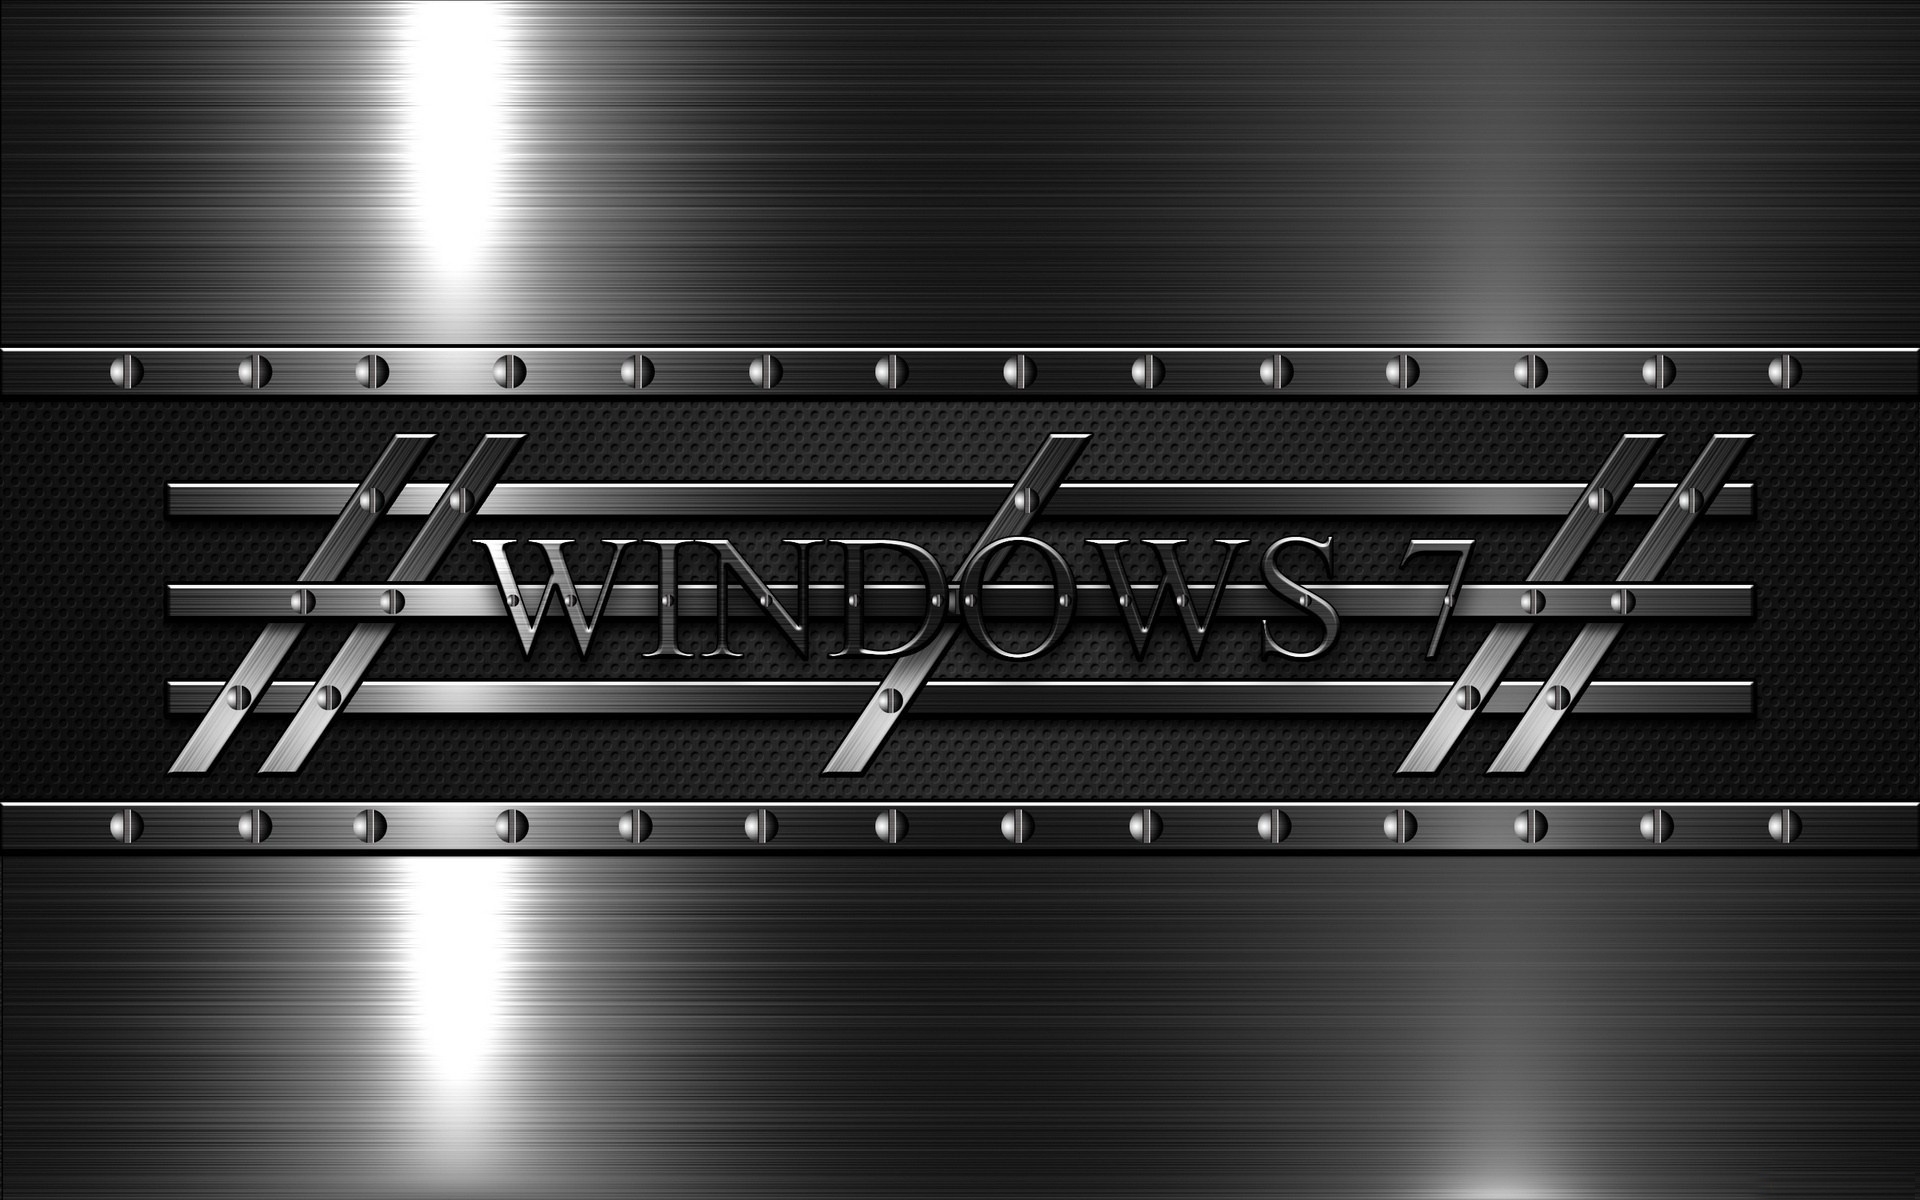 Bạn là người yêu thích màu sắc đơn giản mà đẹp? Hãy xem những hình nền Windows 7 monochrome kim loại này. Thiết kế chuyên nghiệp và tinh tế của chúng đảm bảo sẽ khiến cho màn hình máy tính của bạn trở nên độc đáo và ấn tượng hơn bao giờ hết.